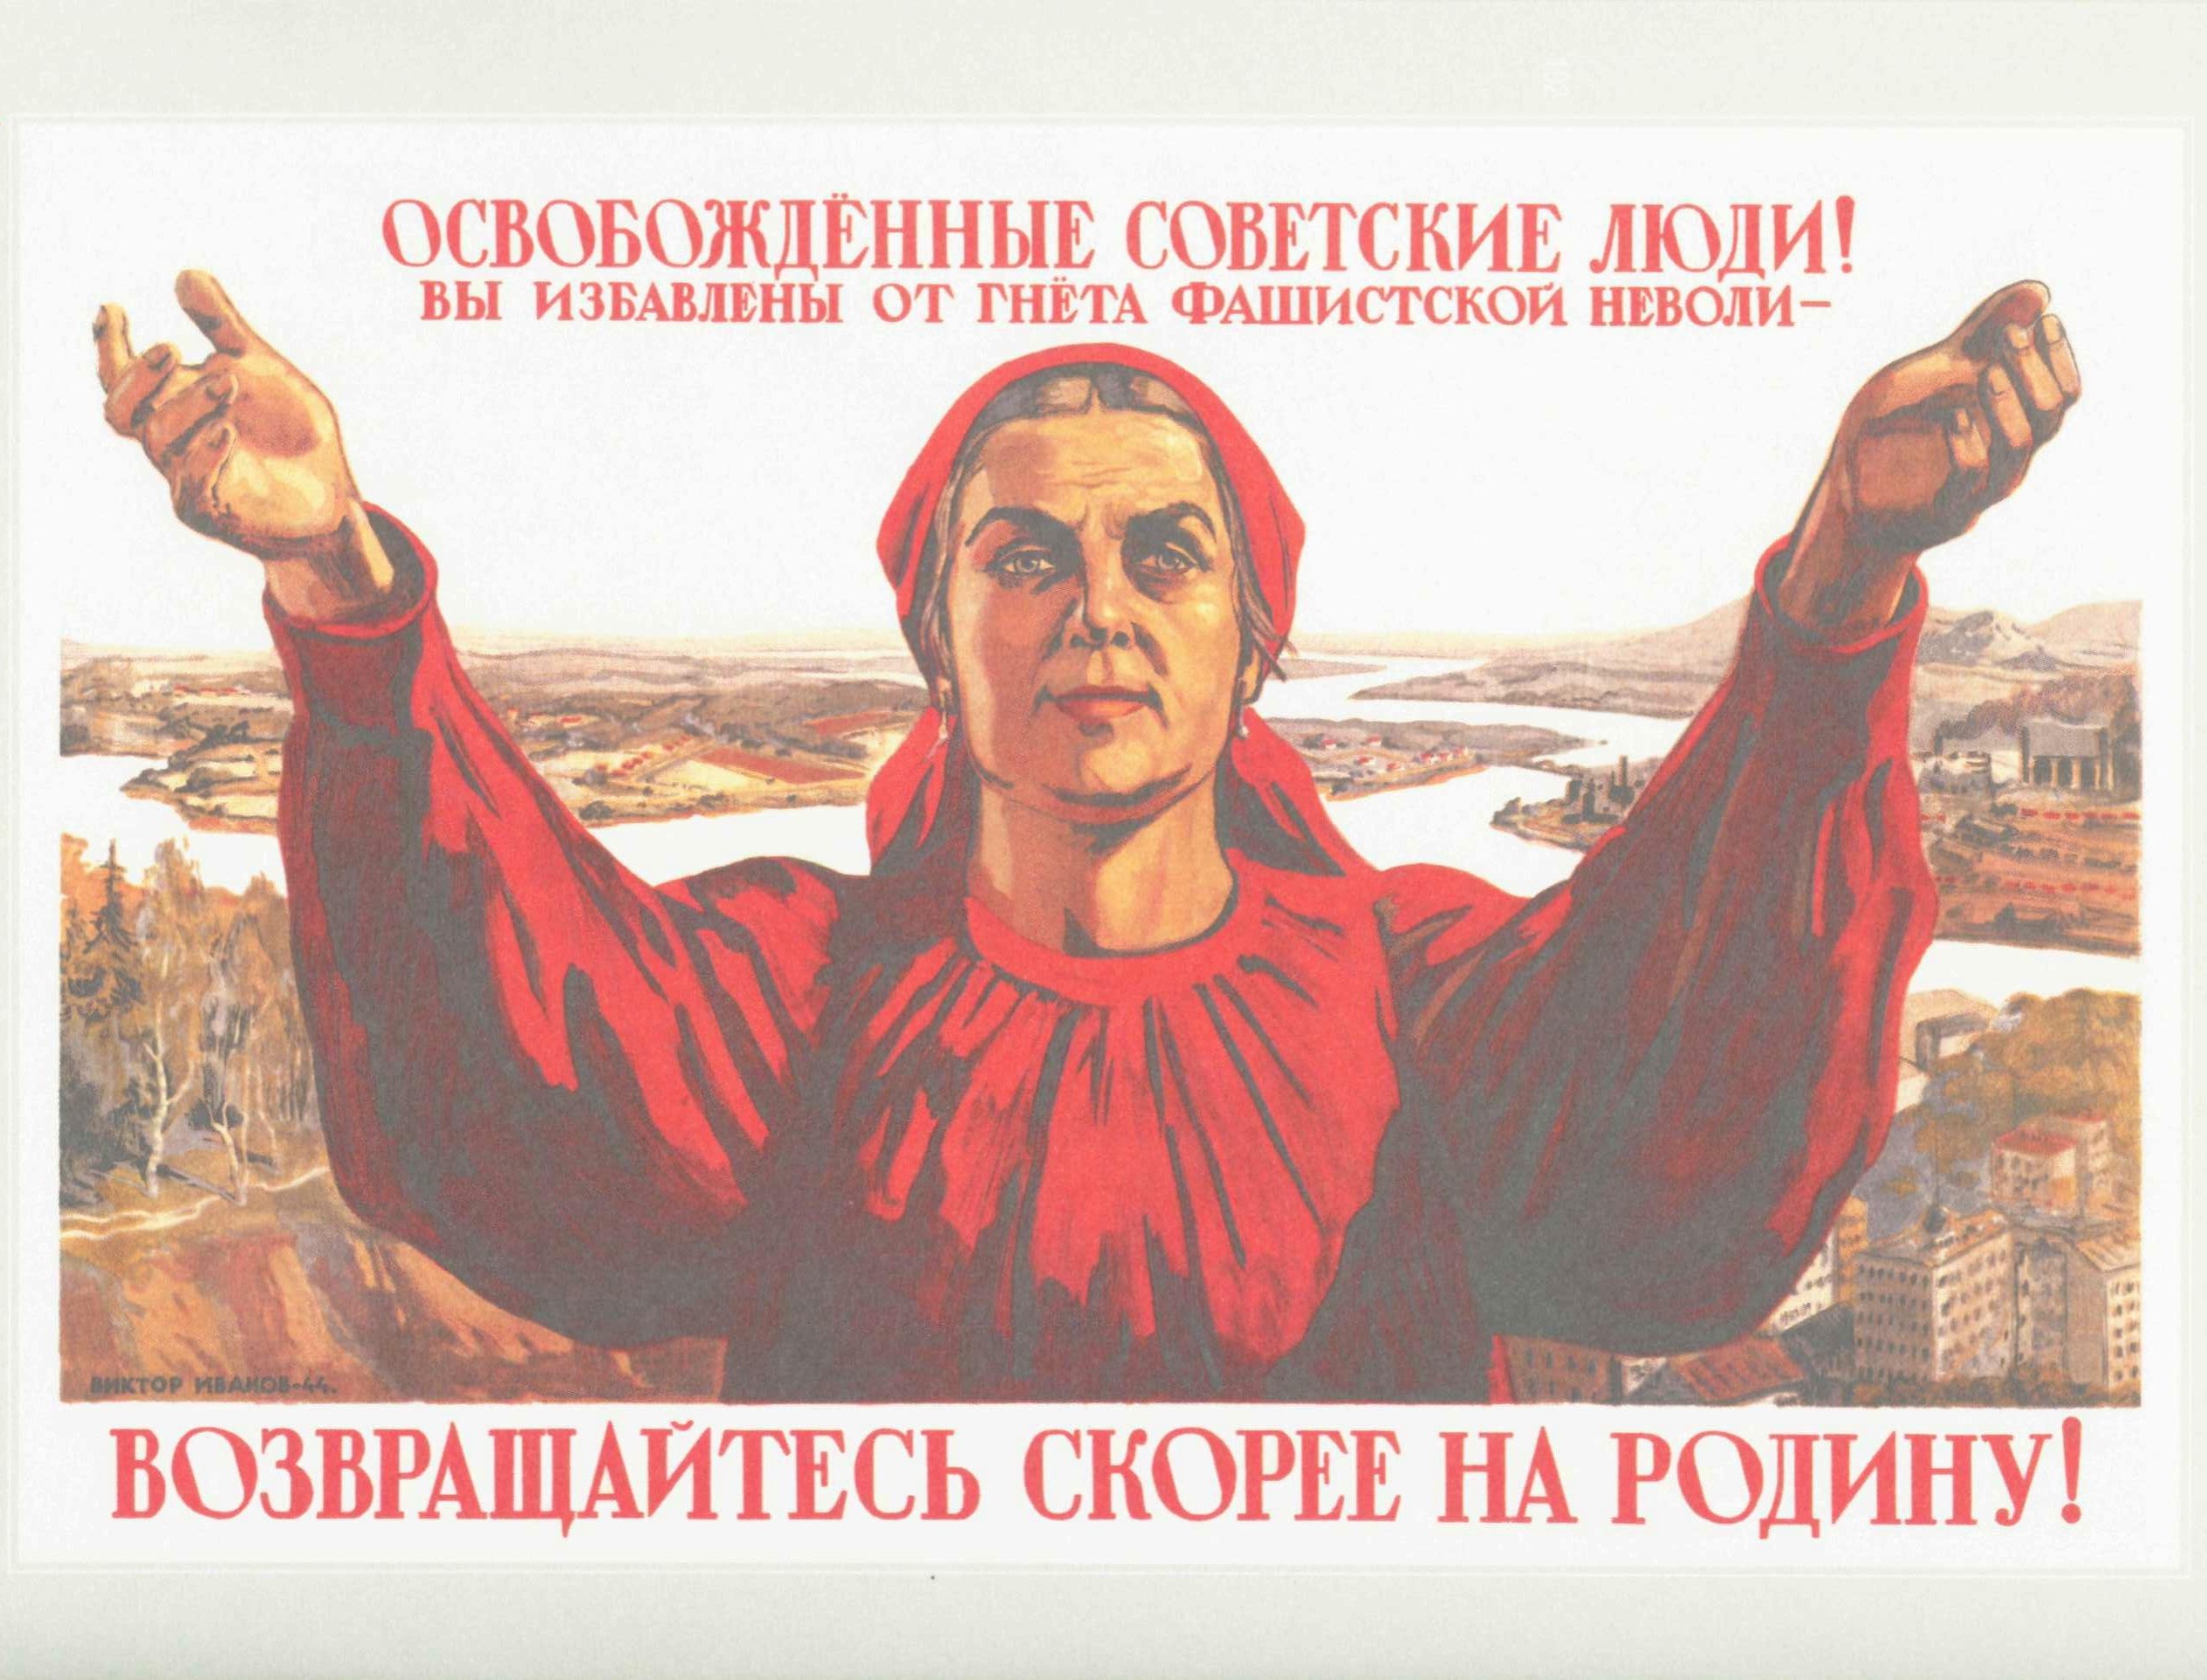 Советские люди плакат. Советские плакаты. Советские агитационные плакаты. Плакат призывающий.